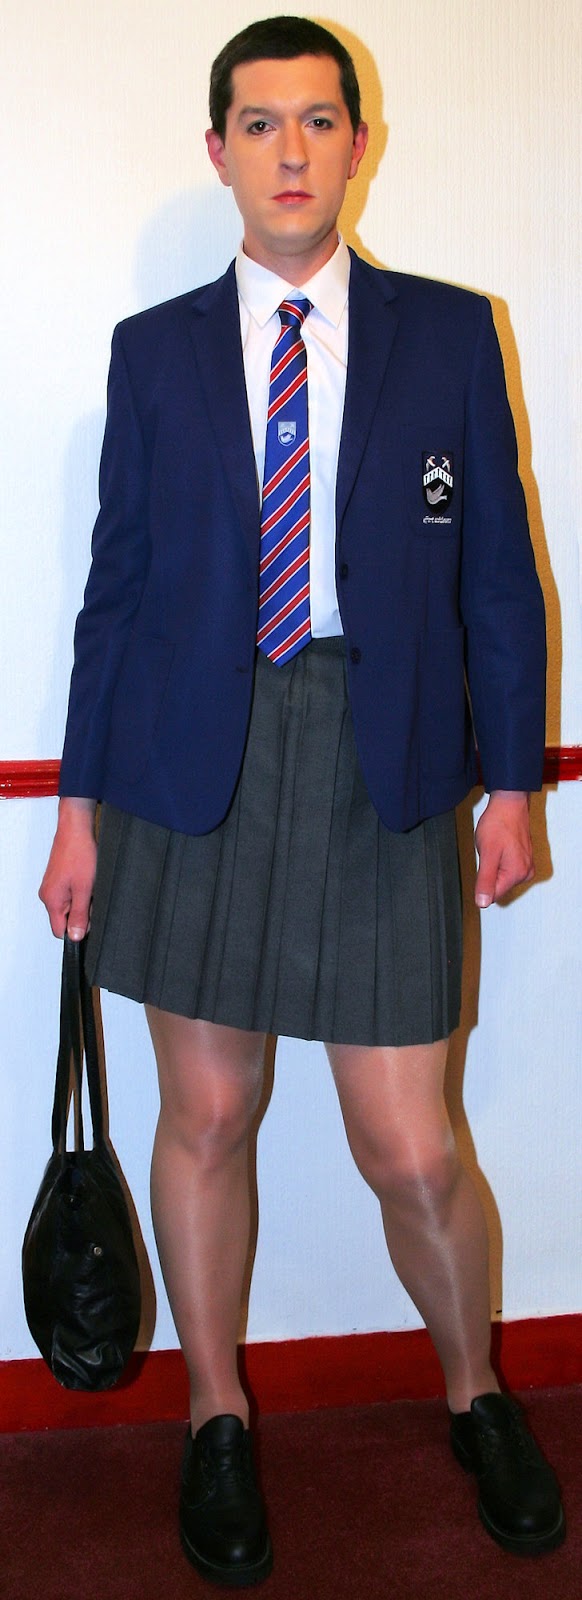 Chris Millett: Chris Millett, Hazelwick school uniform